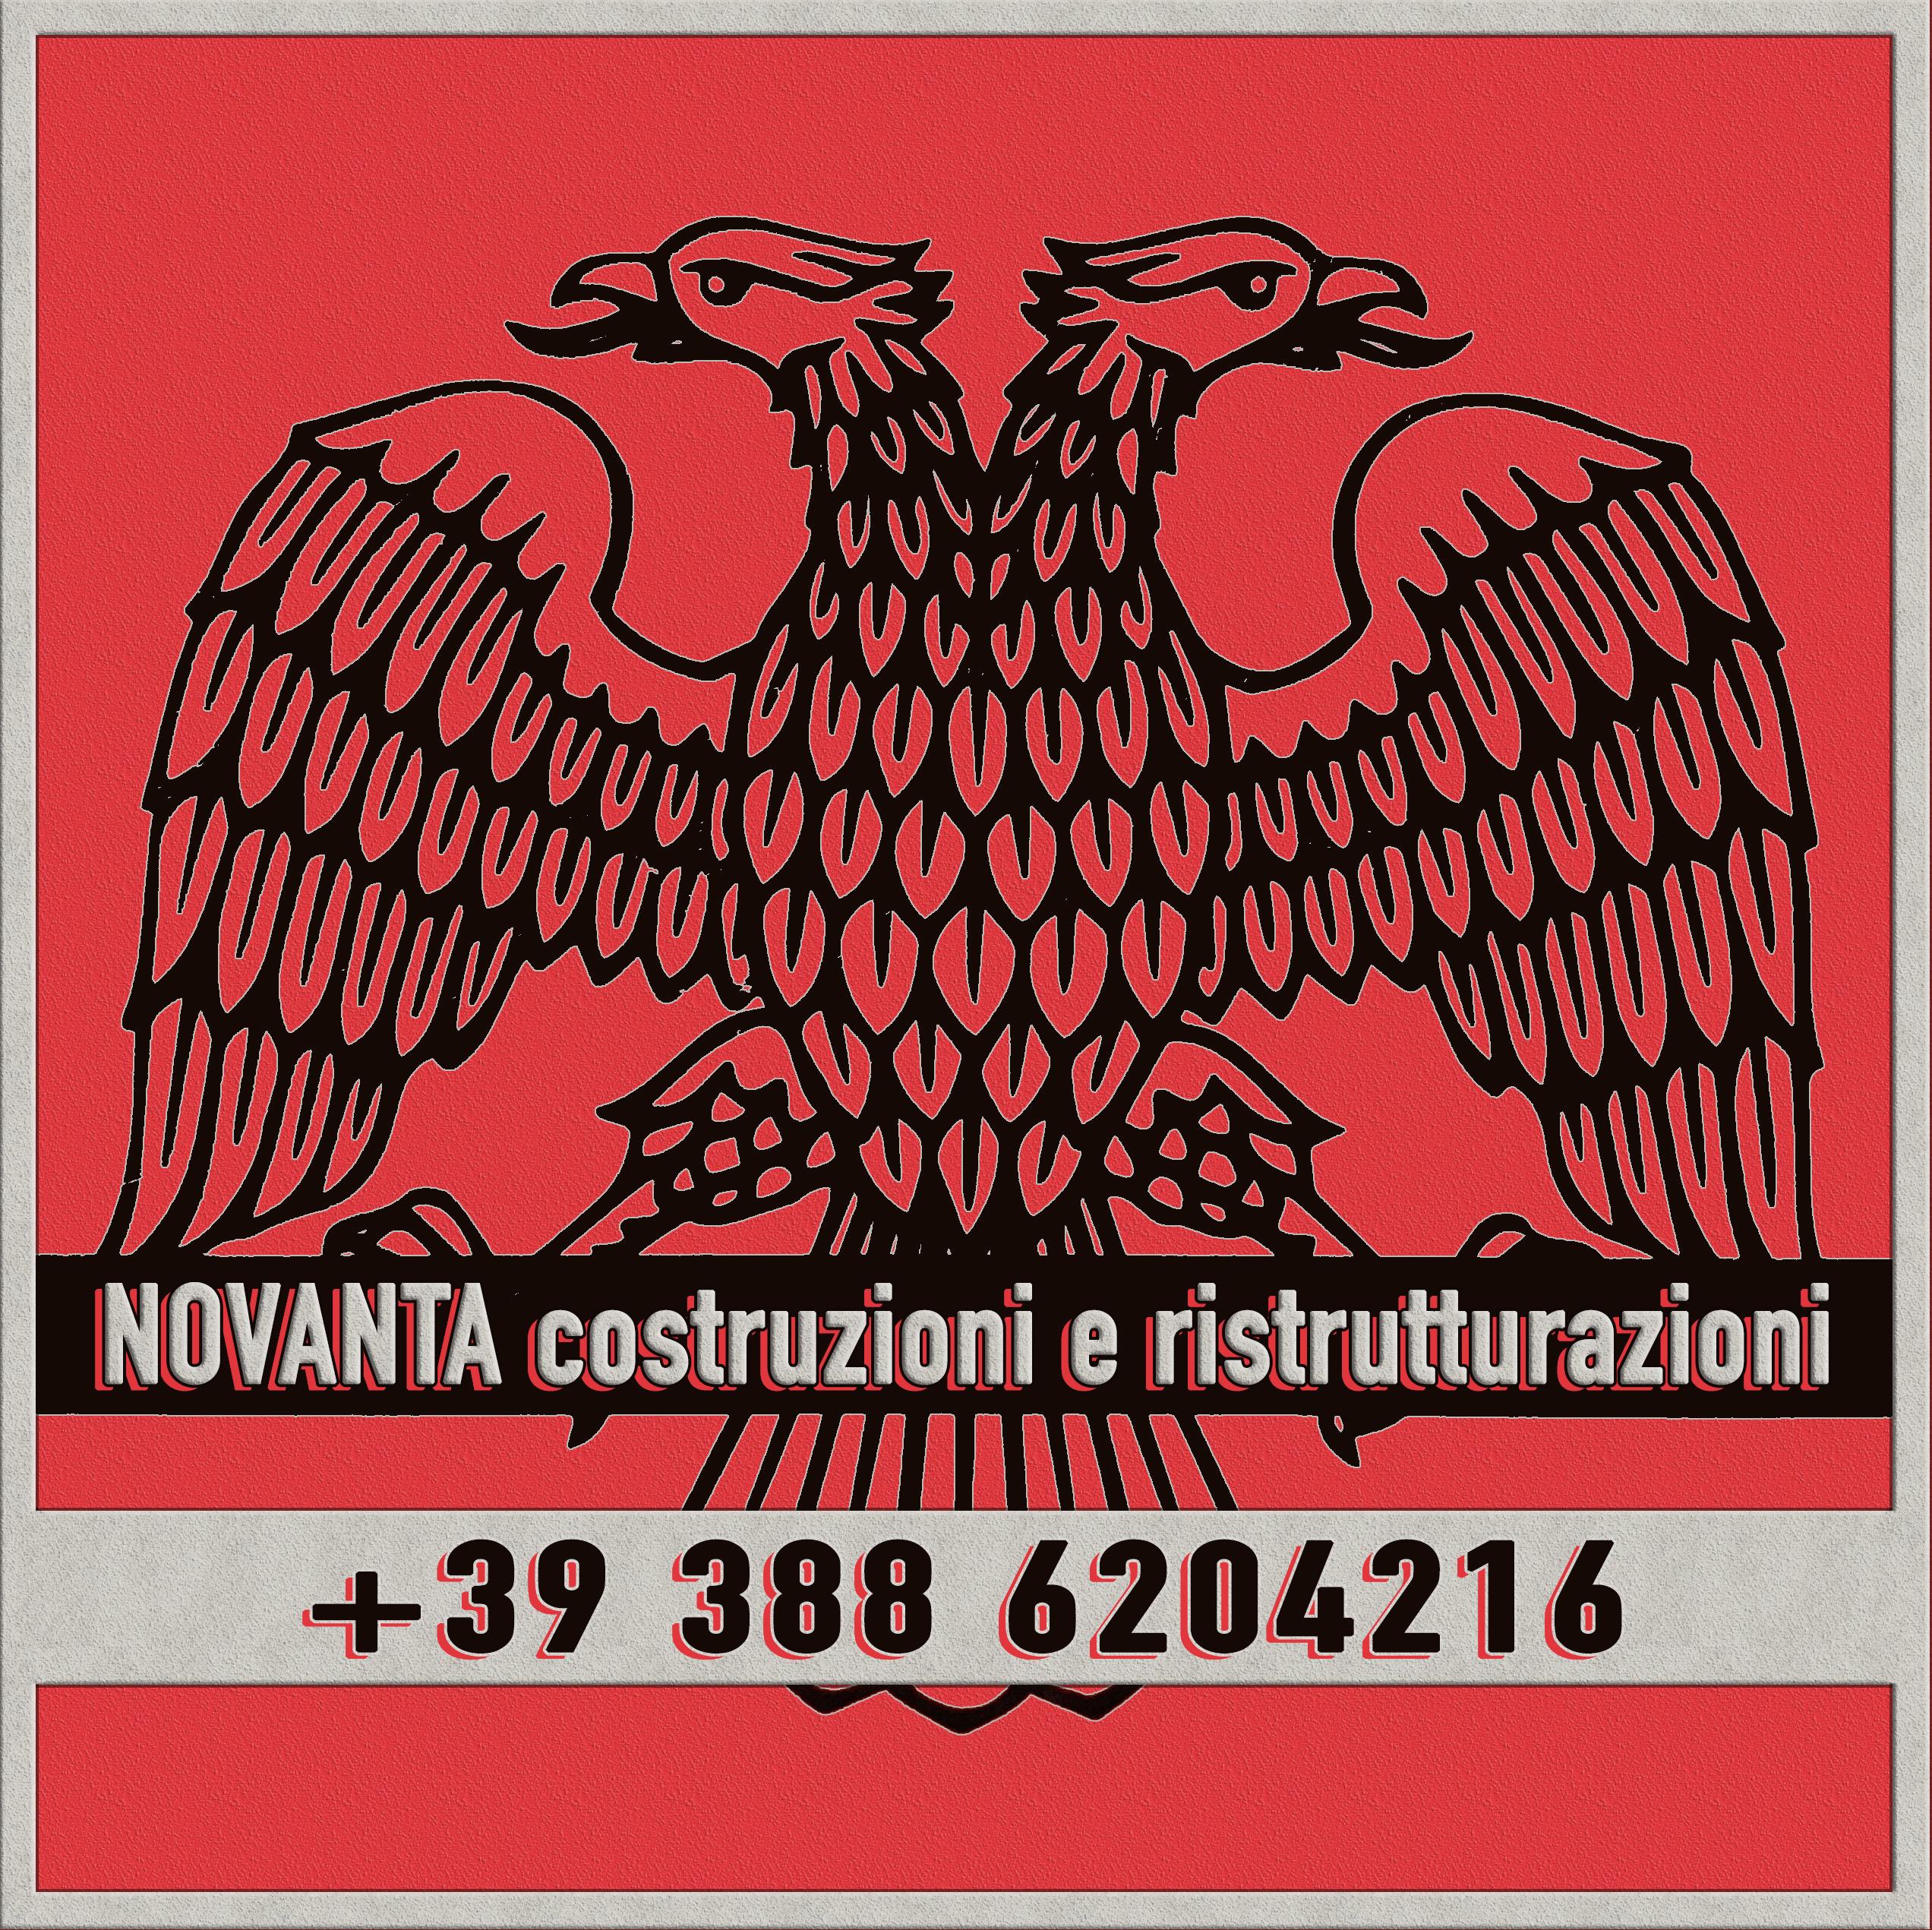 Images Novanta - Costruzioni e ristrutturazioni edili